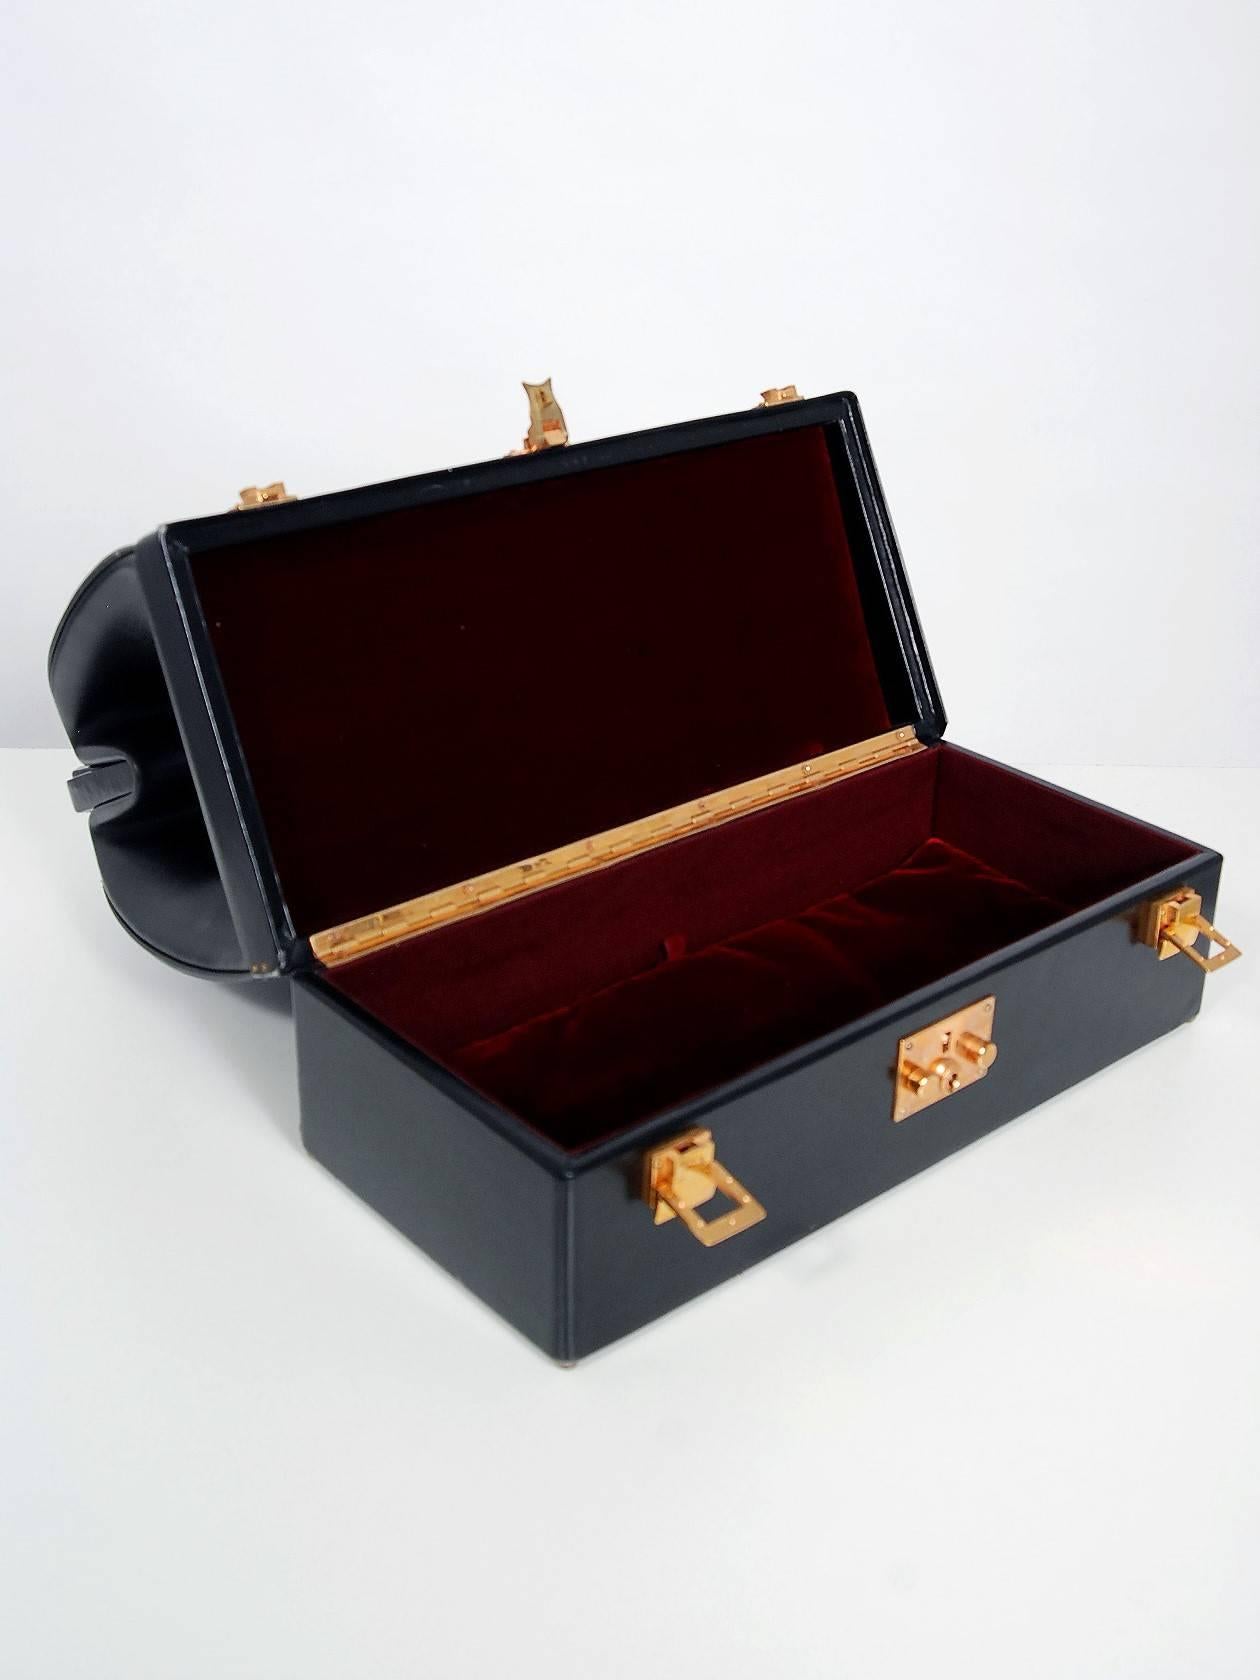 Hermes Paris Rare Black Leather Sac Mallette Two Tier Travel Case Handbag, 1970s 1